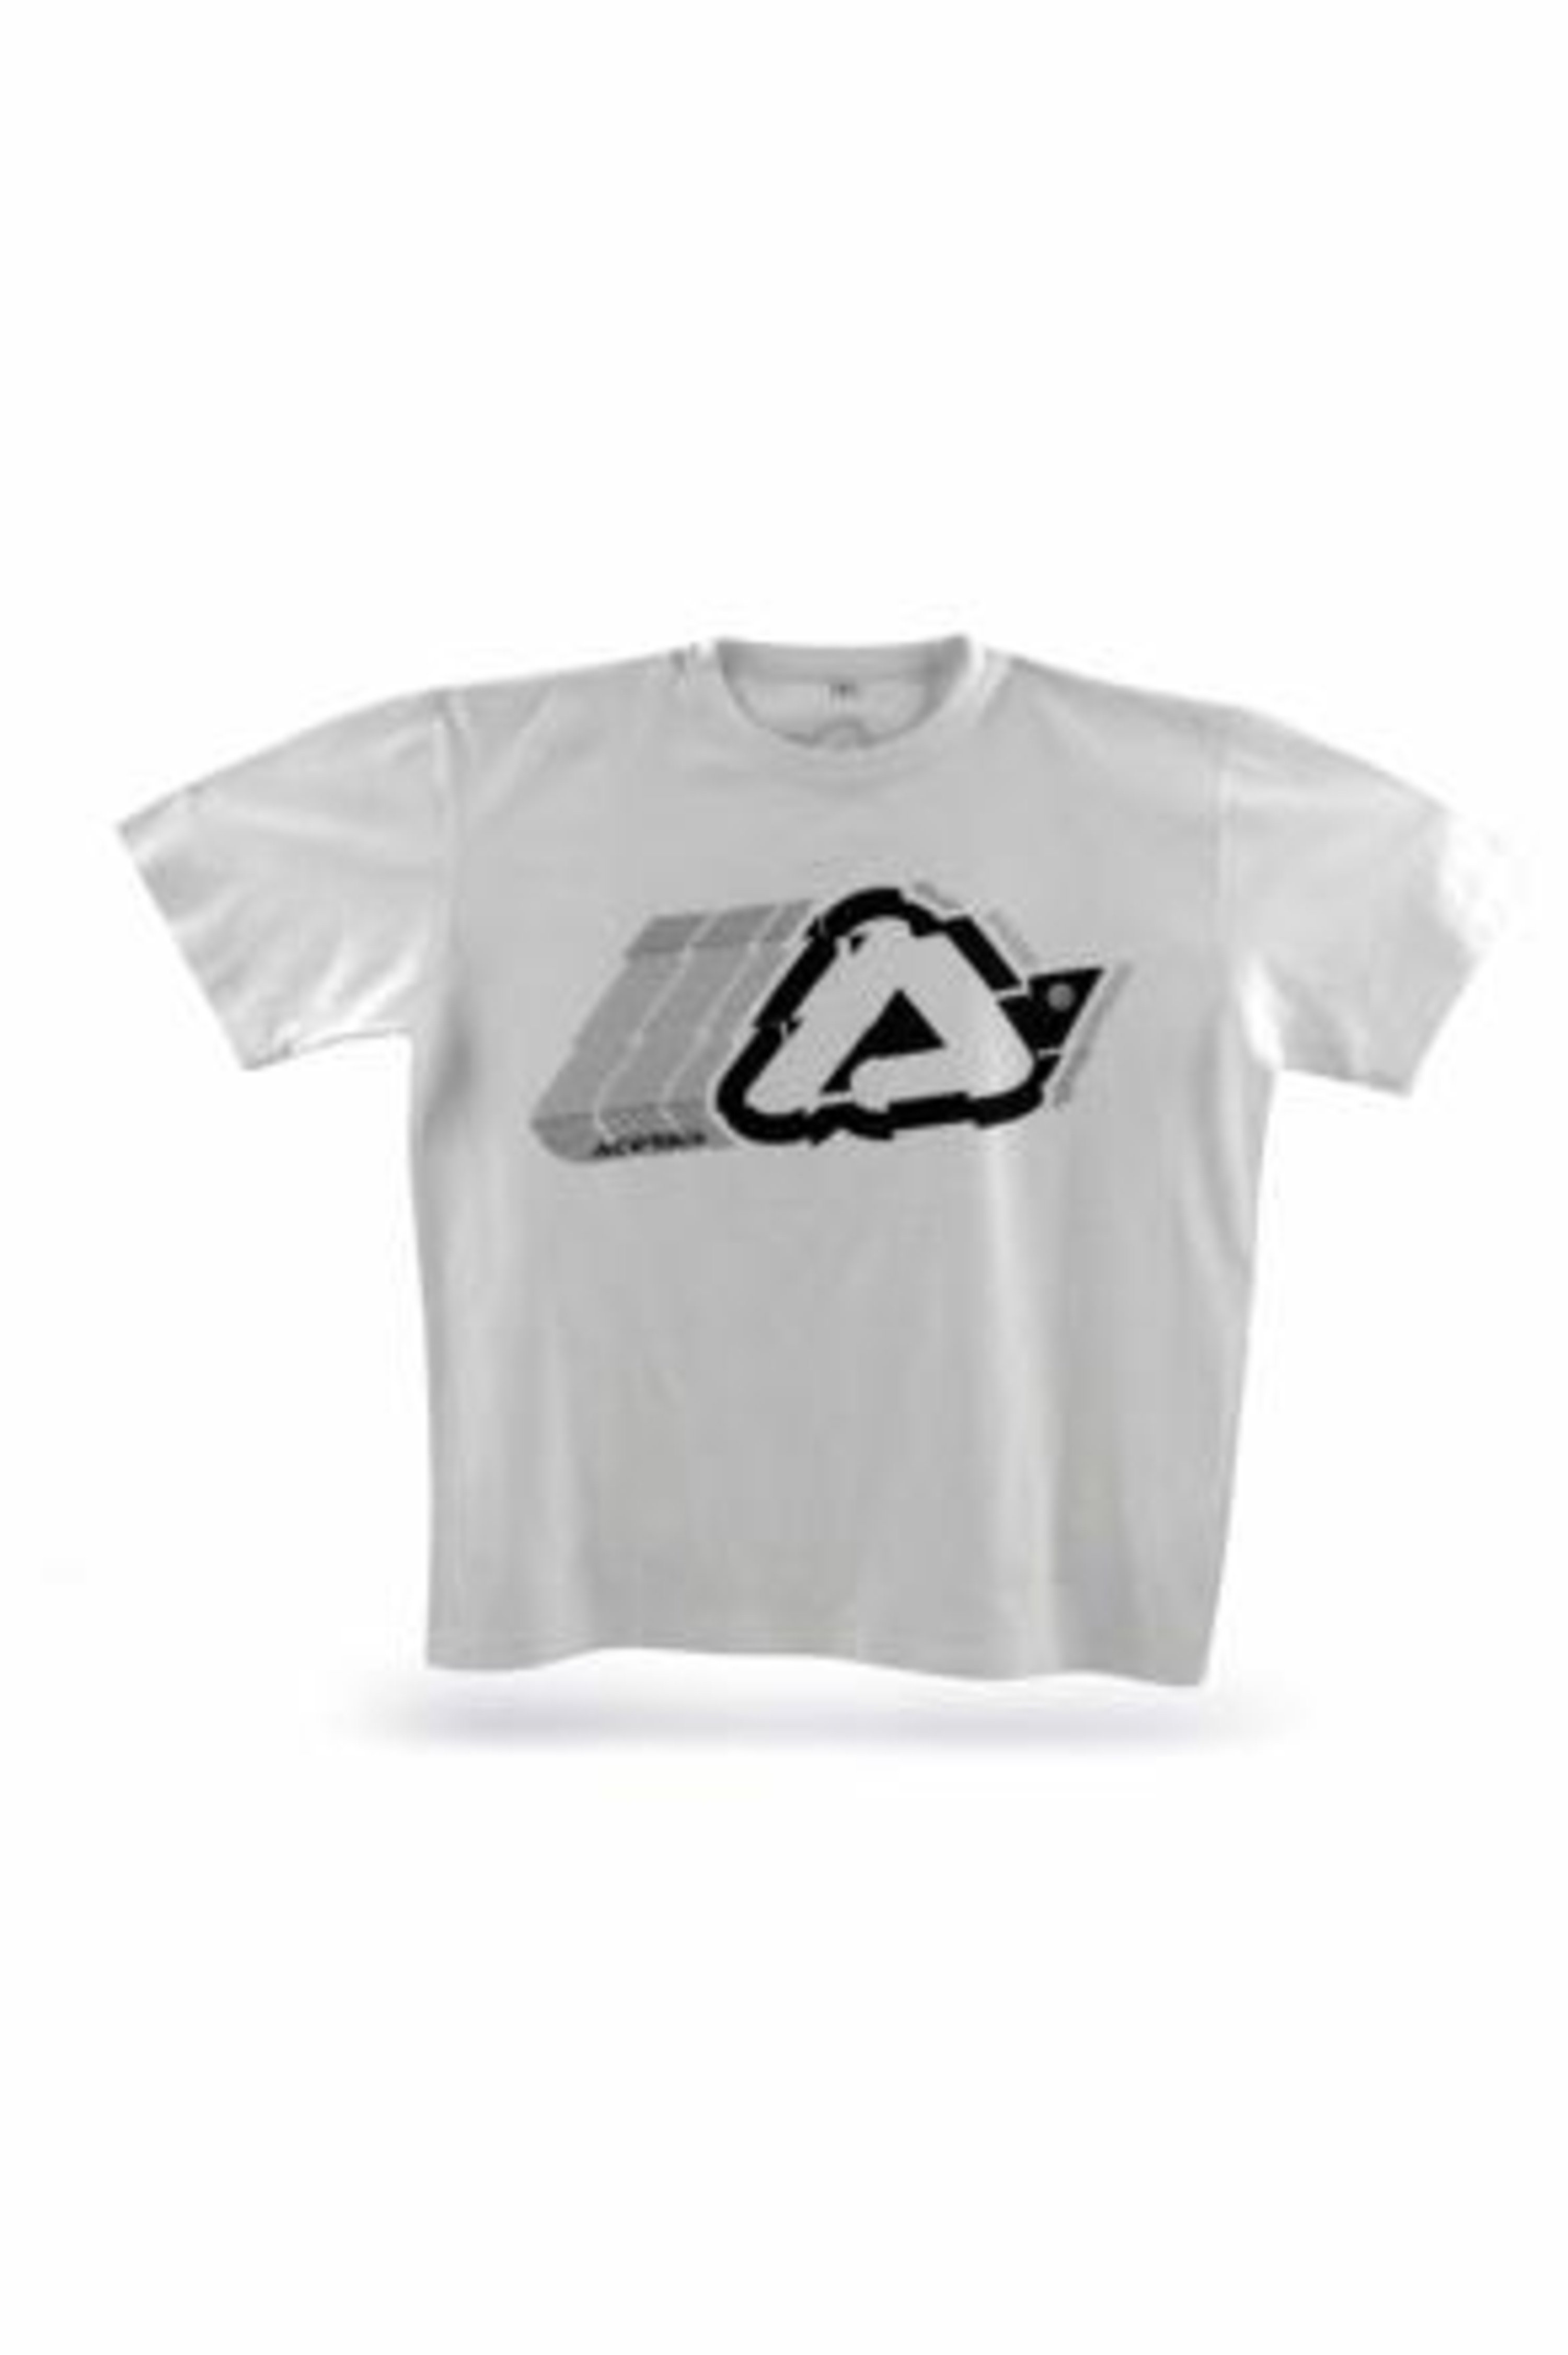 Acerbis Brand T-Shirt